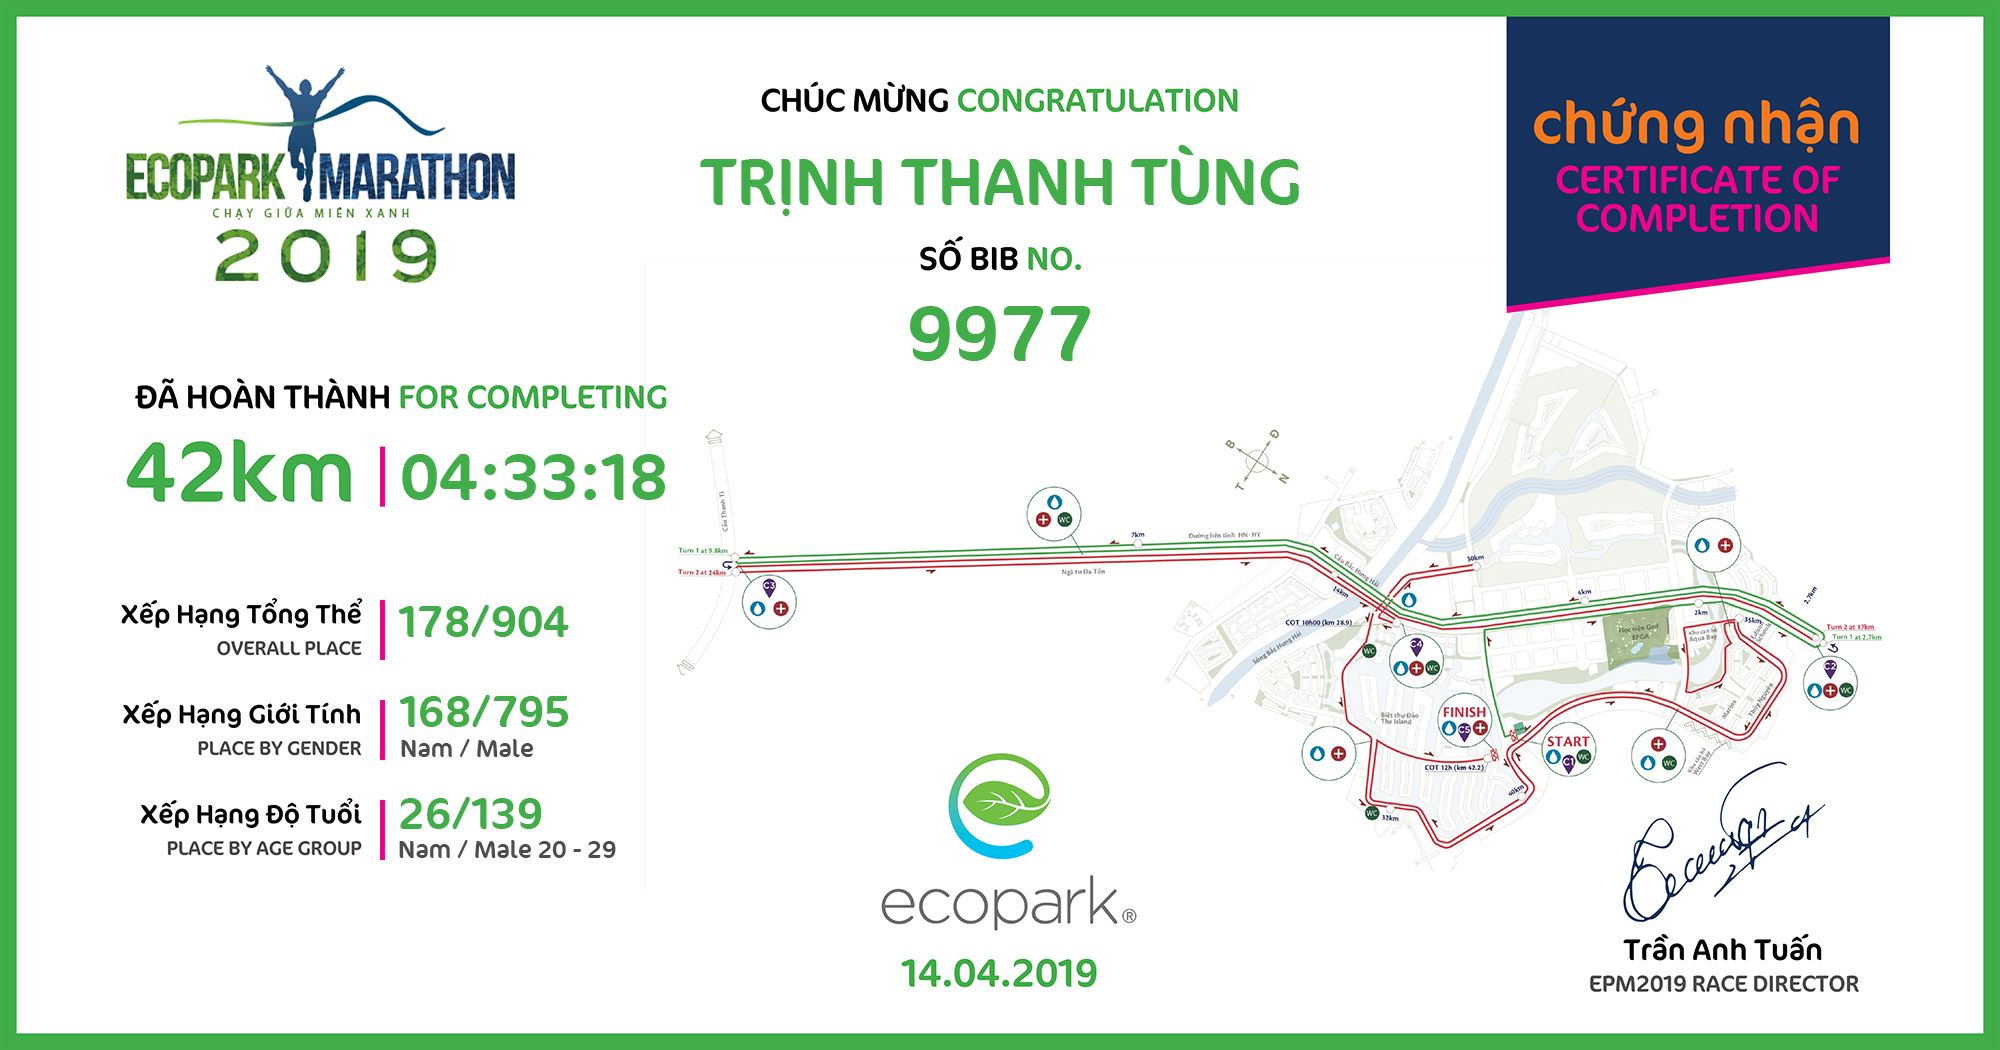 9977 - Trịnh Thanh Tùng